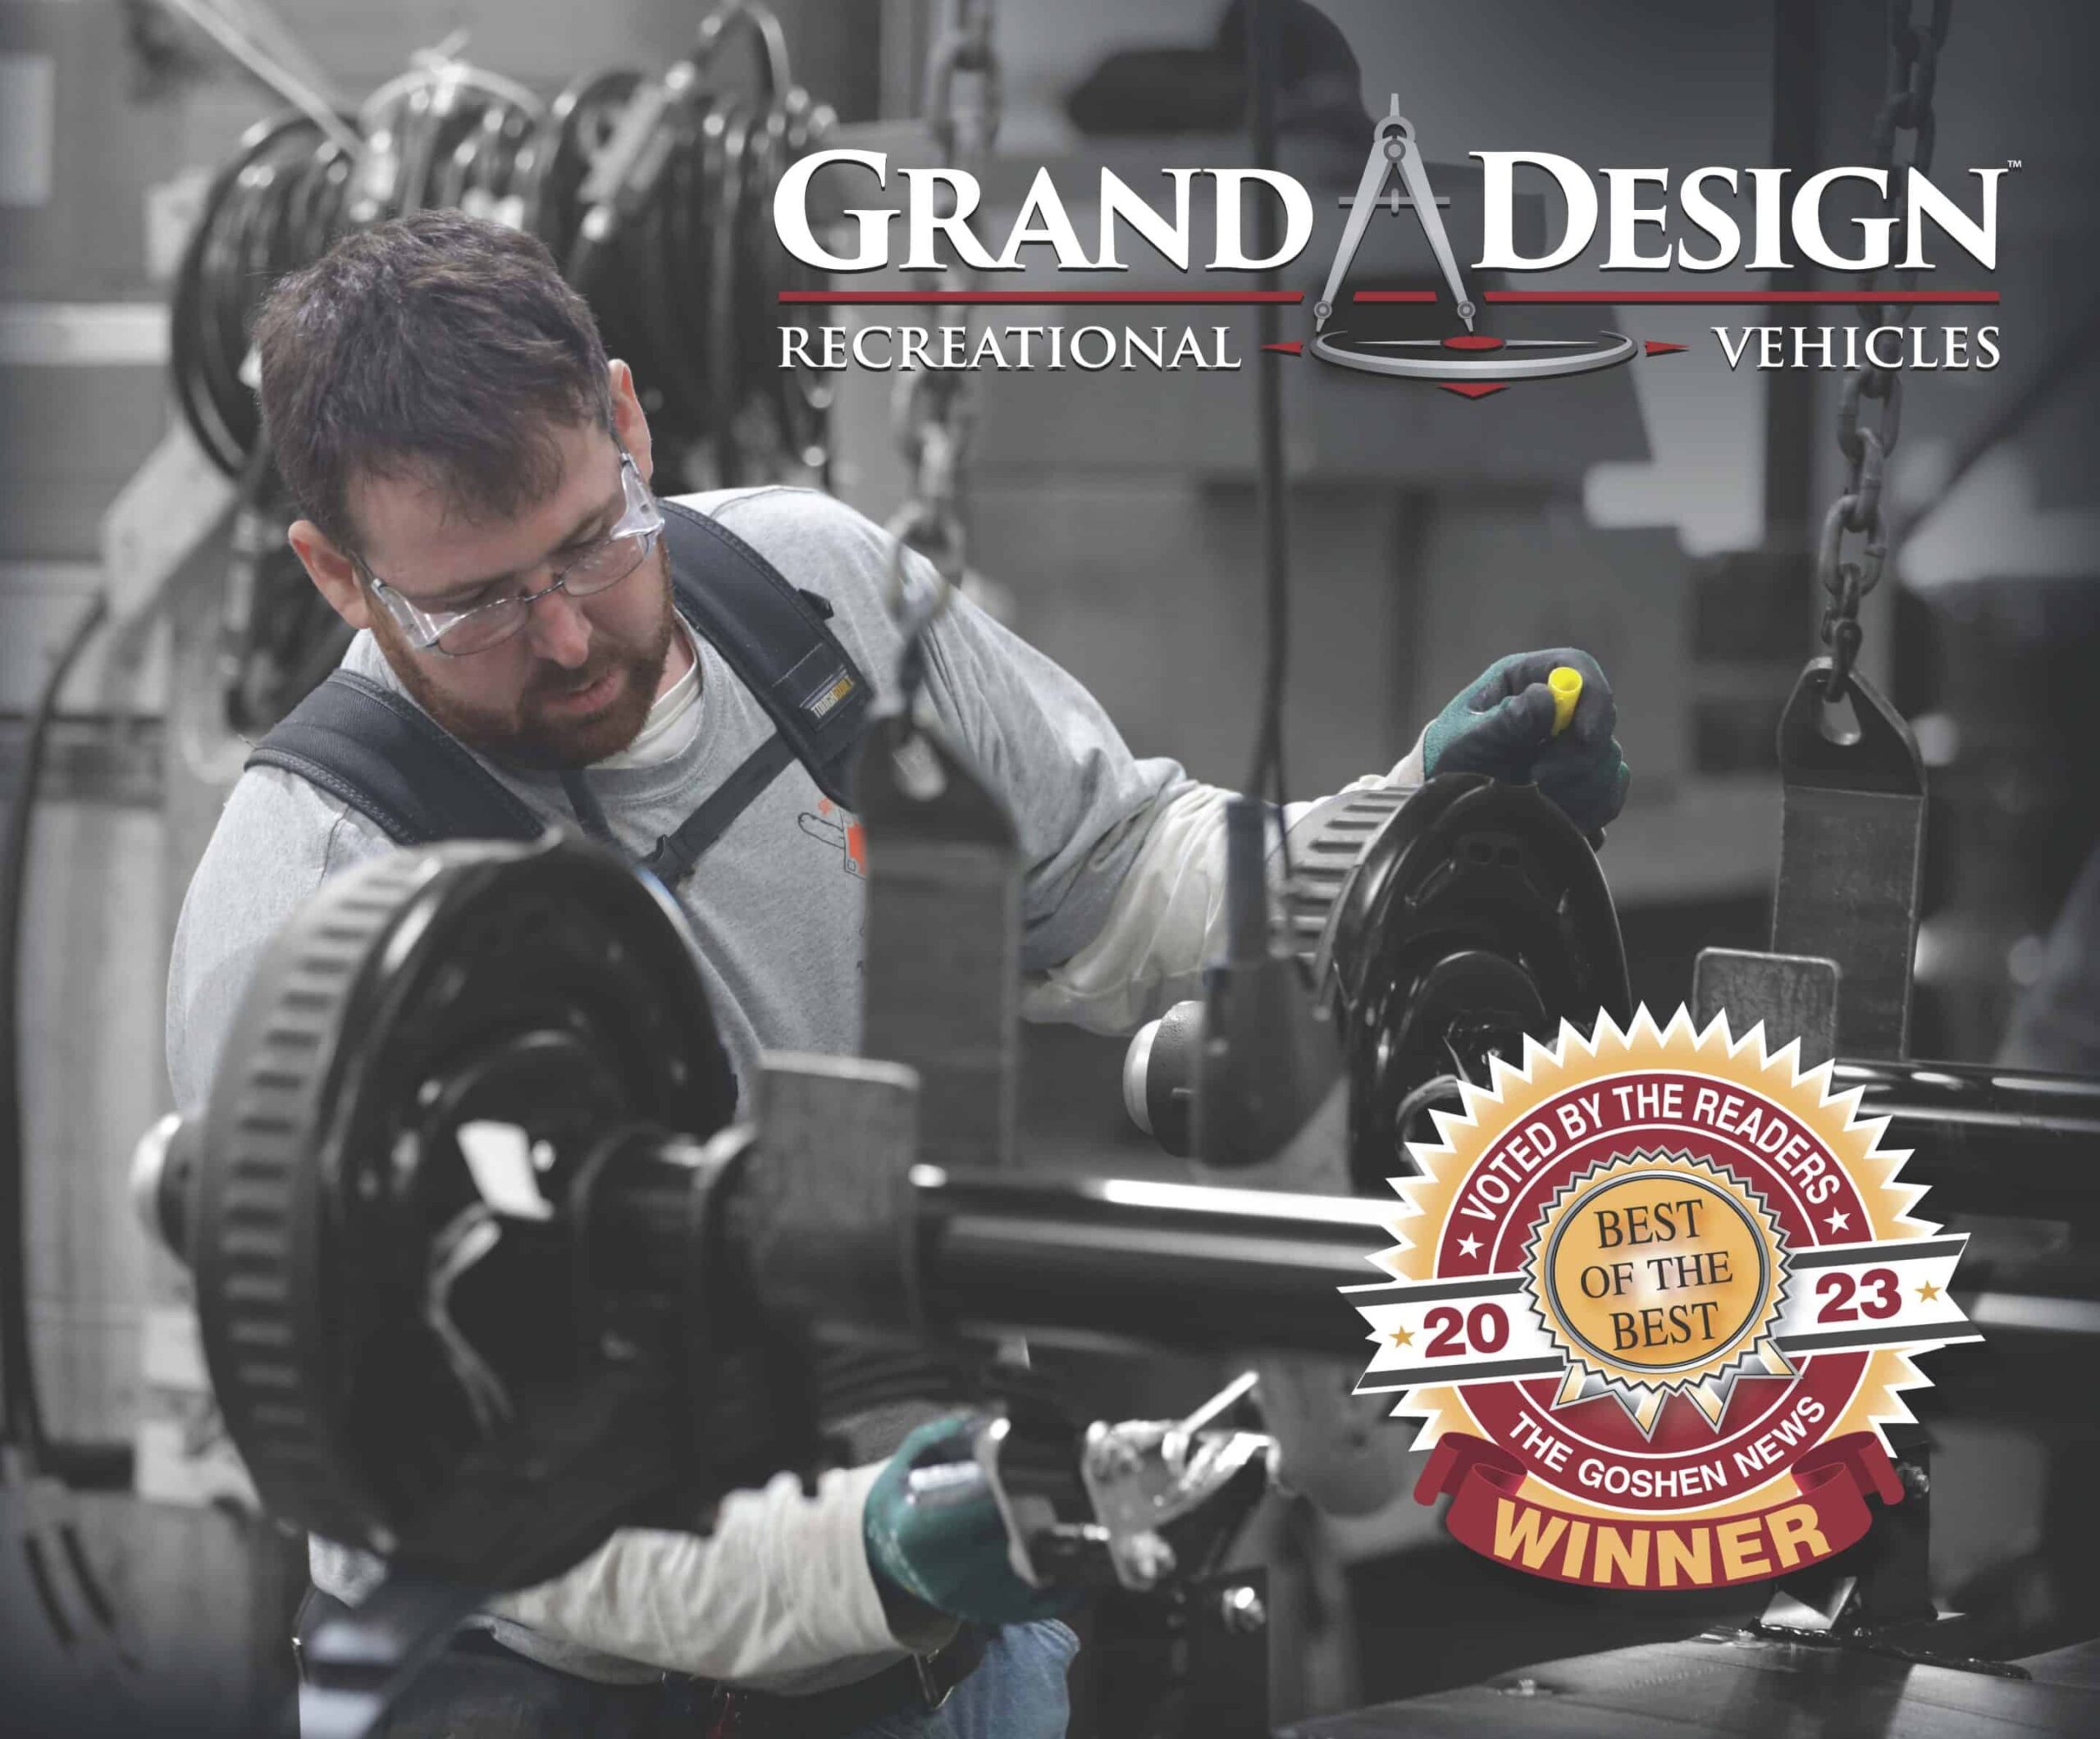 Grand Design Voted ‘Best Employer’ in ‘Goshen News’